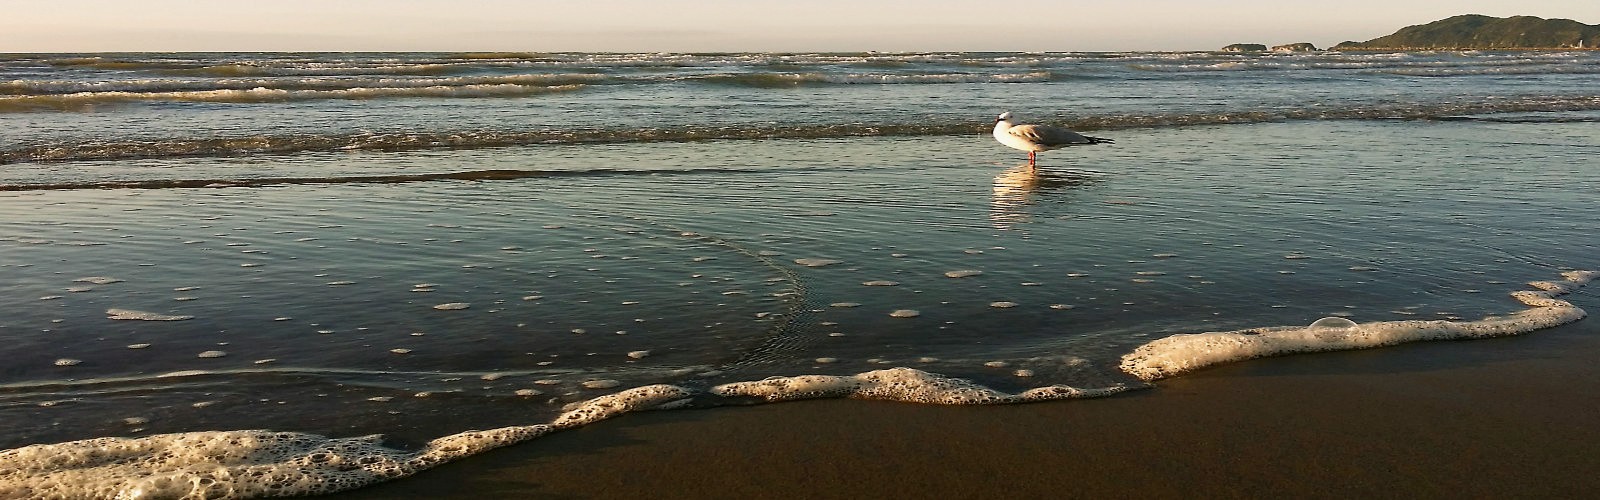 Pohara Beach seagull